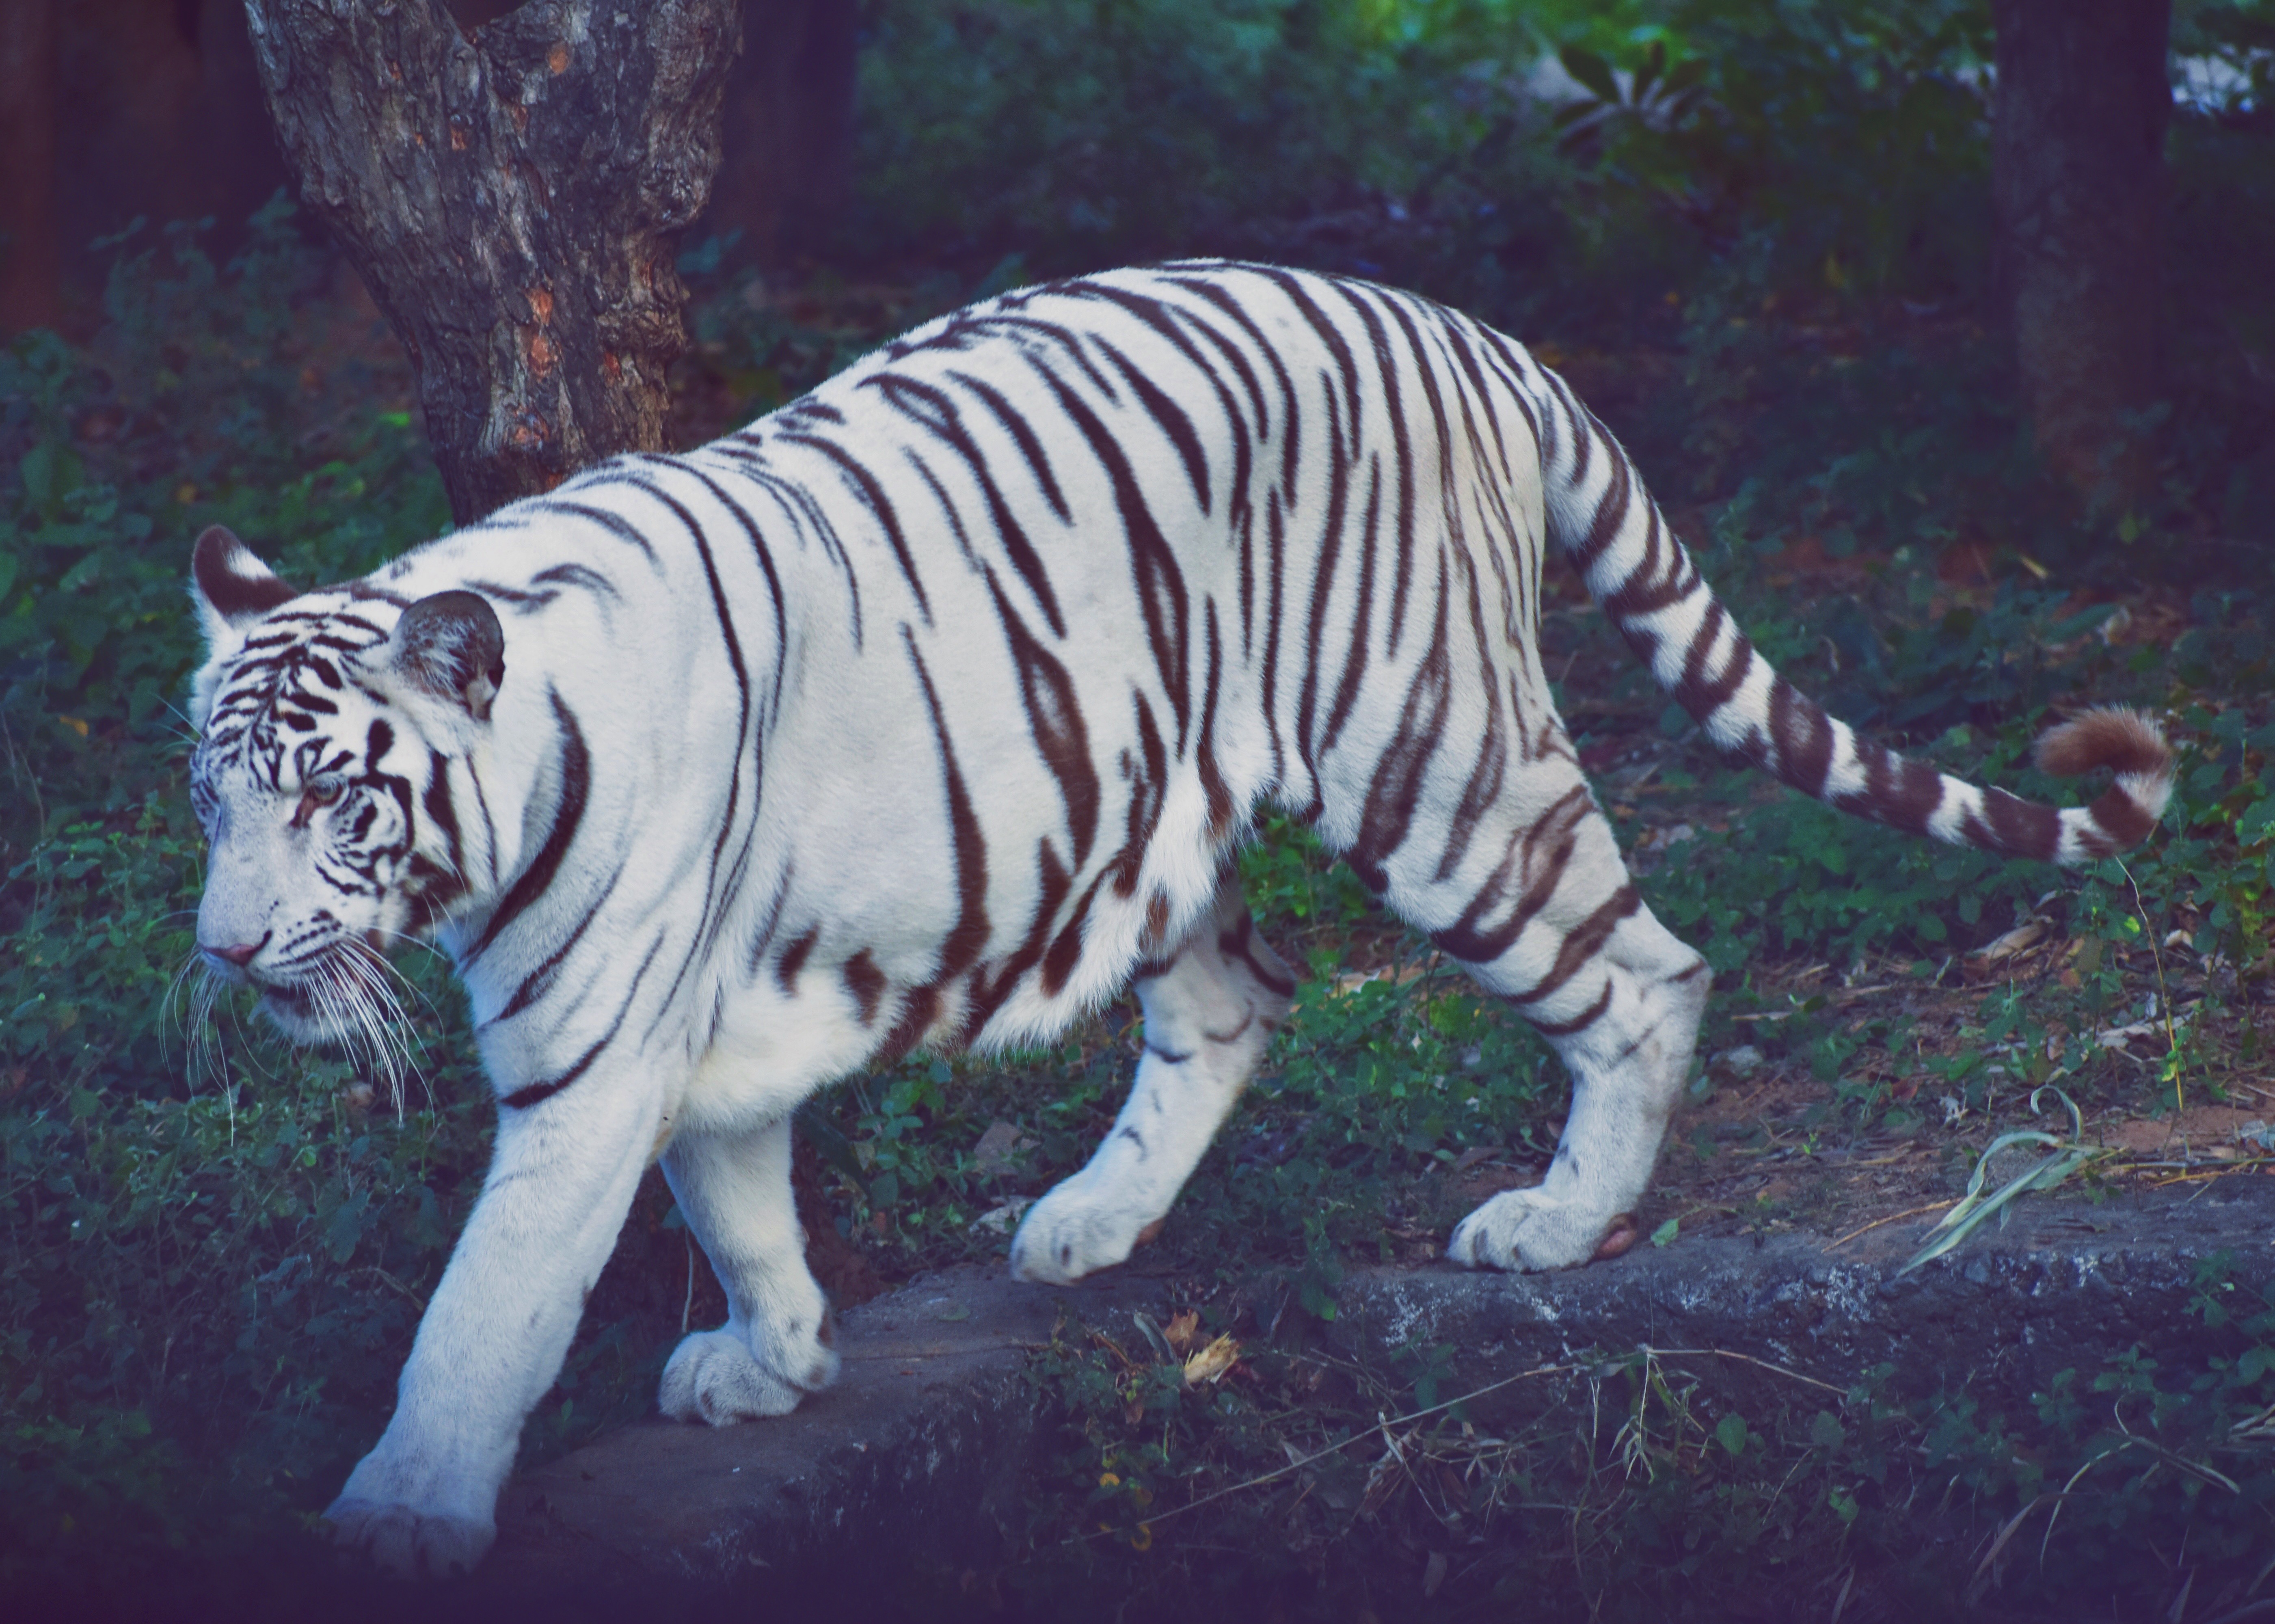 The majestic white tiger